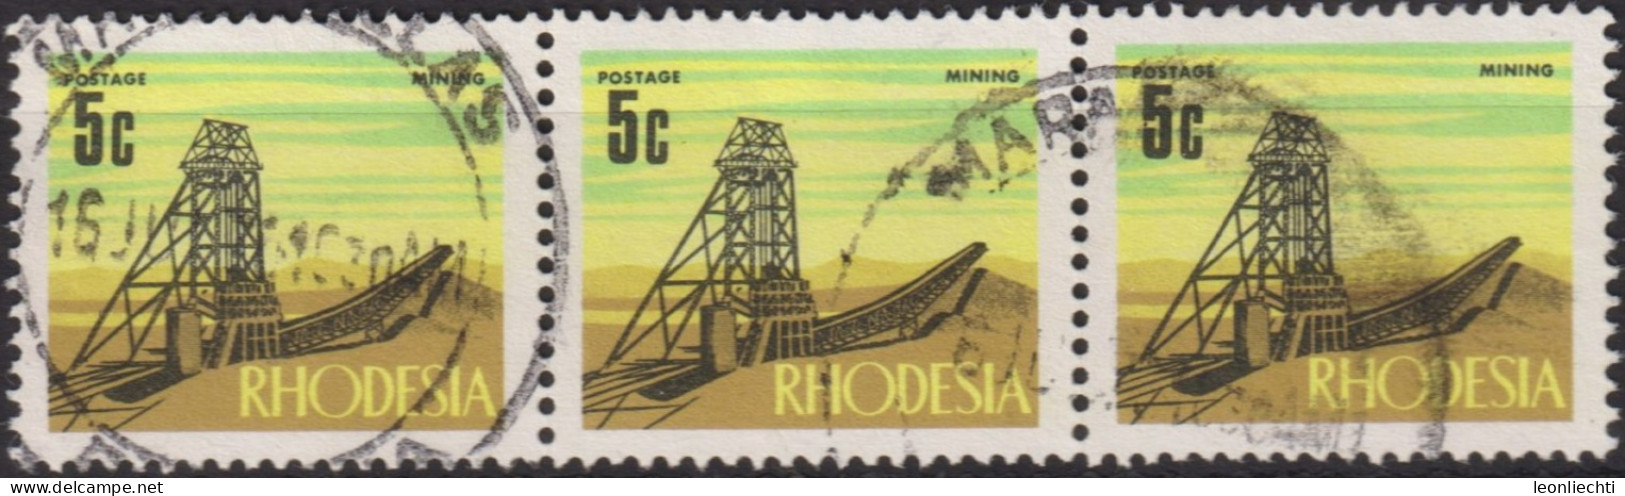 1970 Rhodesien ° Mi:RH 92, Sn:RH 281, Yt:RH 186, Sg:RH 443, Mining, Decimal Currency Definitives (1970-1973) - Rodesia (1964-1980)